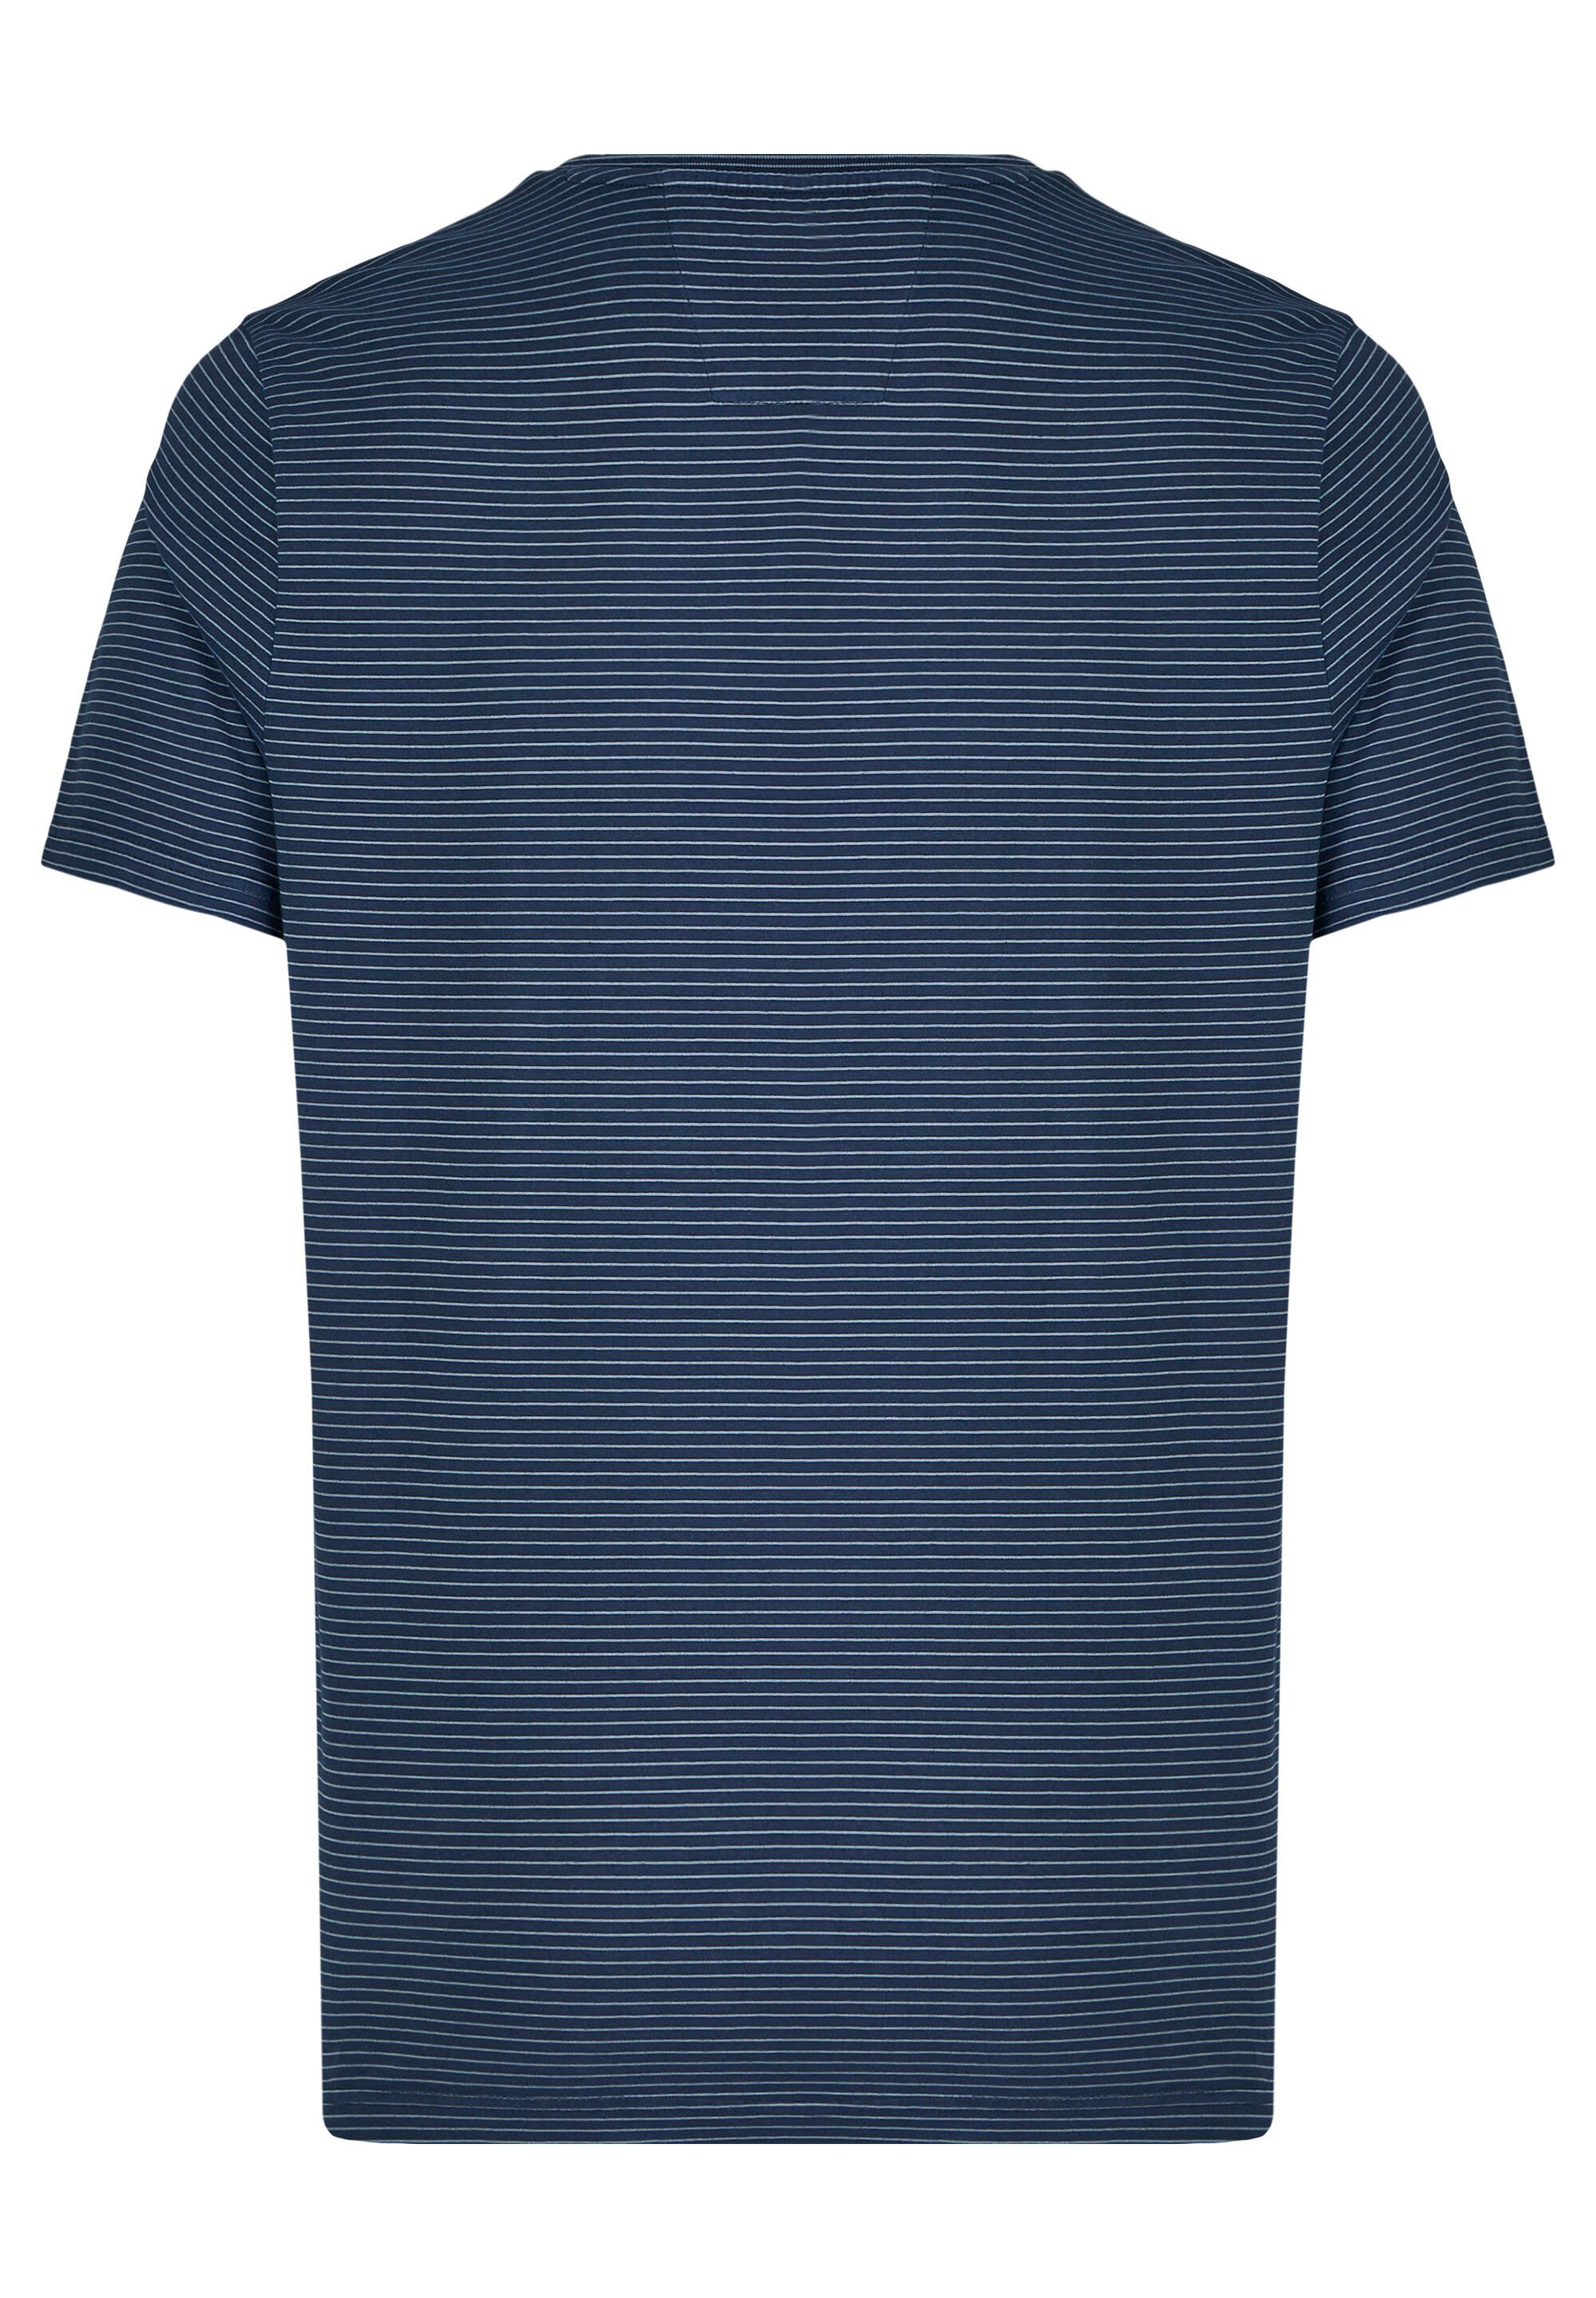 HECHTER PARIS T-Shirt Brusttasche blue dark